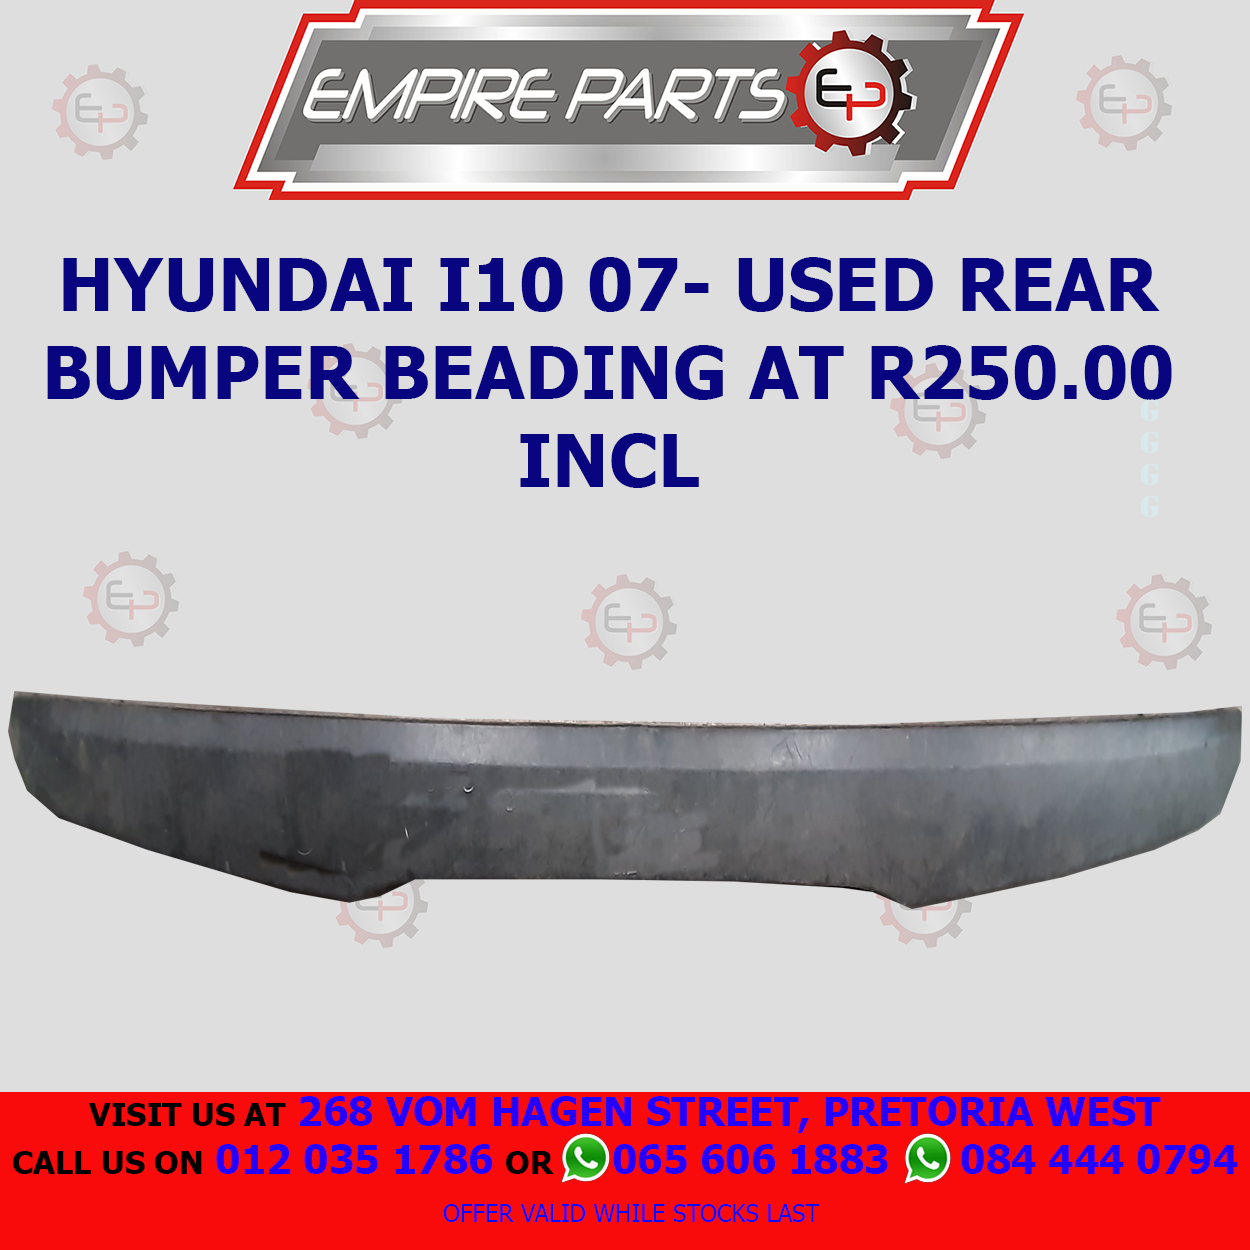 HYUNDAI I10 07- USED REAR BUMPER BEADING